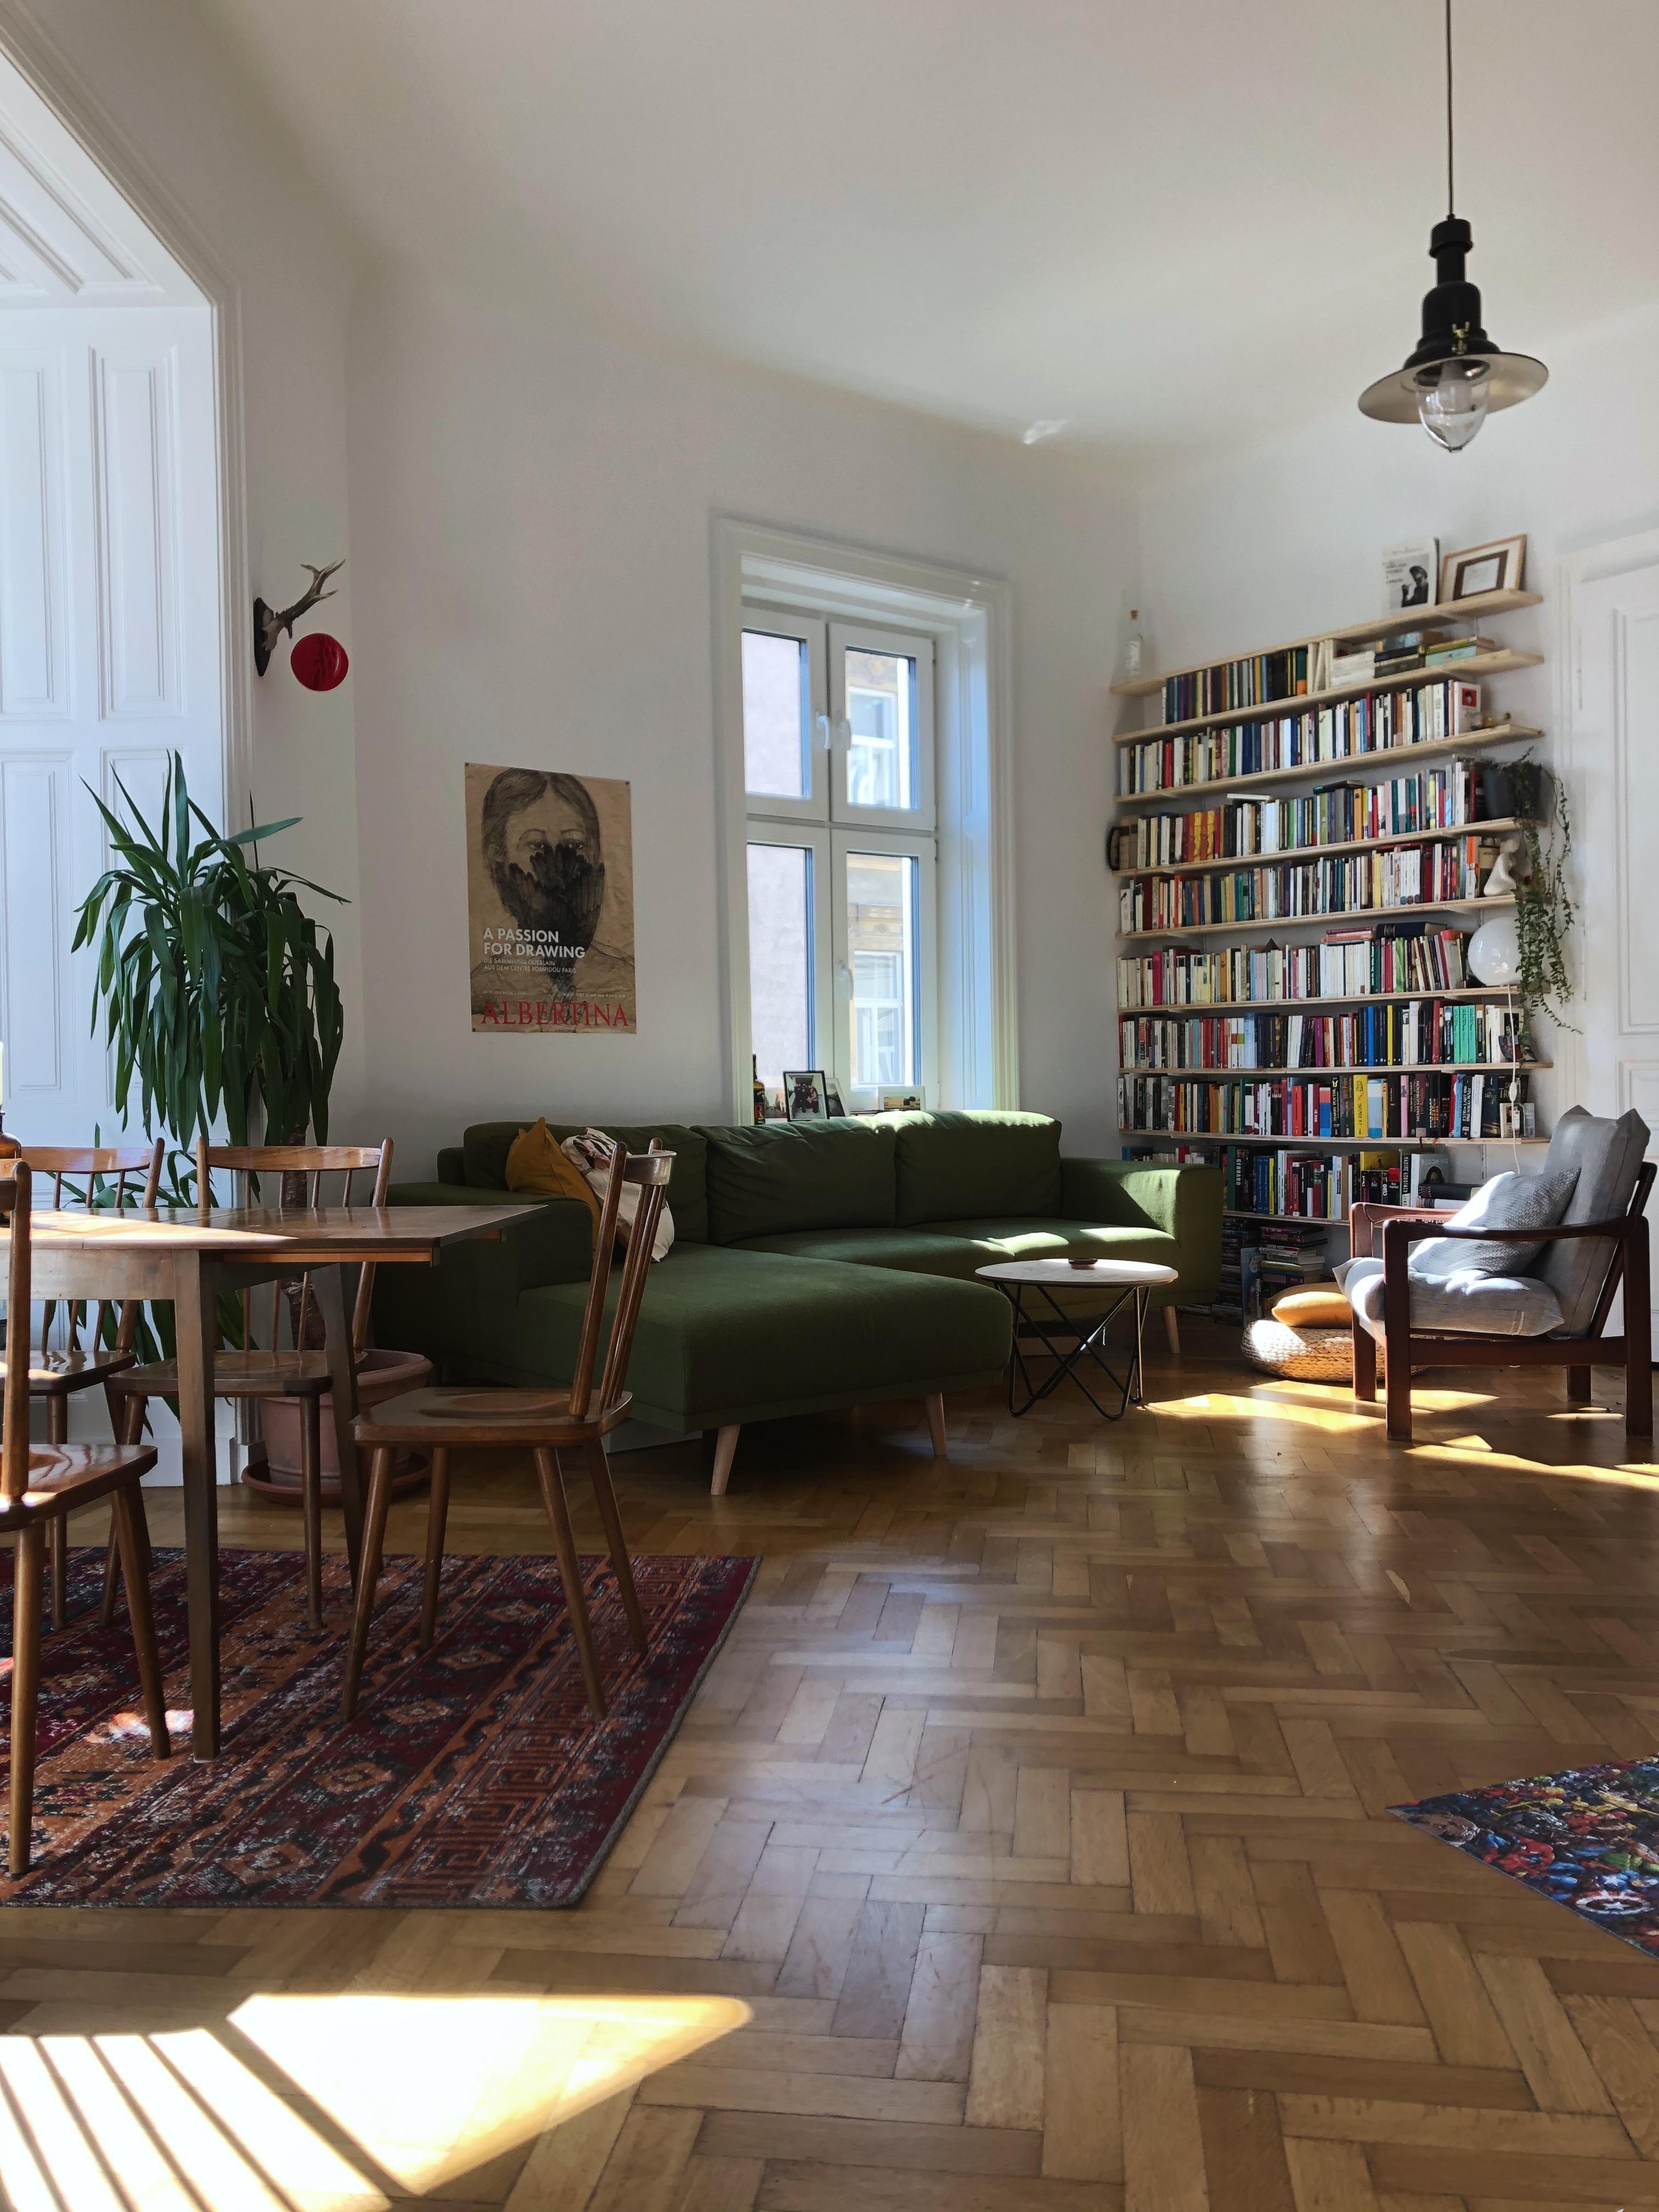 Ein Blick in unser Wohnzimmer und mein Lieblingspart, das Bücherregal #bücherregal #bücherliebe #vintagehome #livingroom